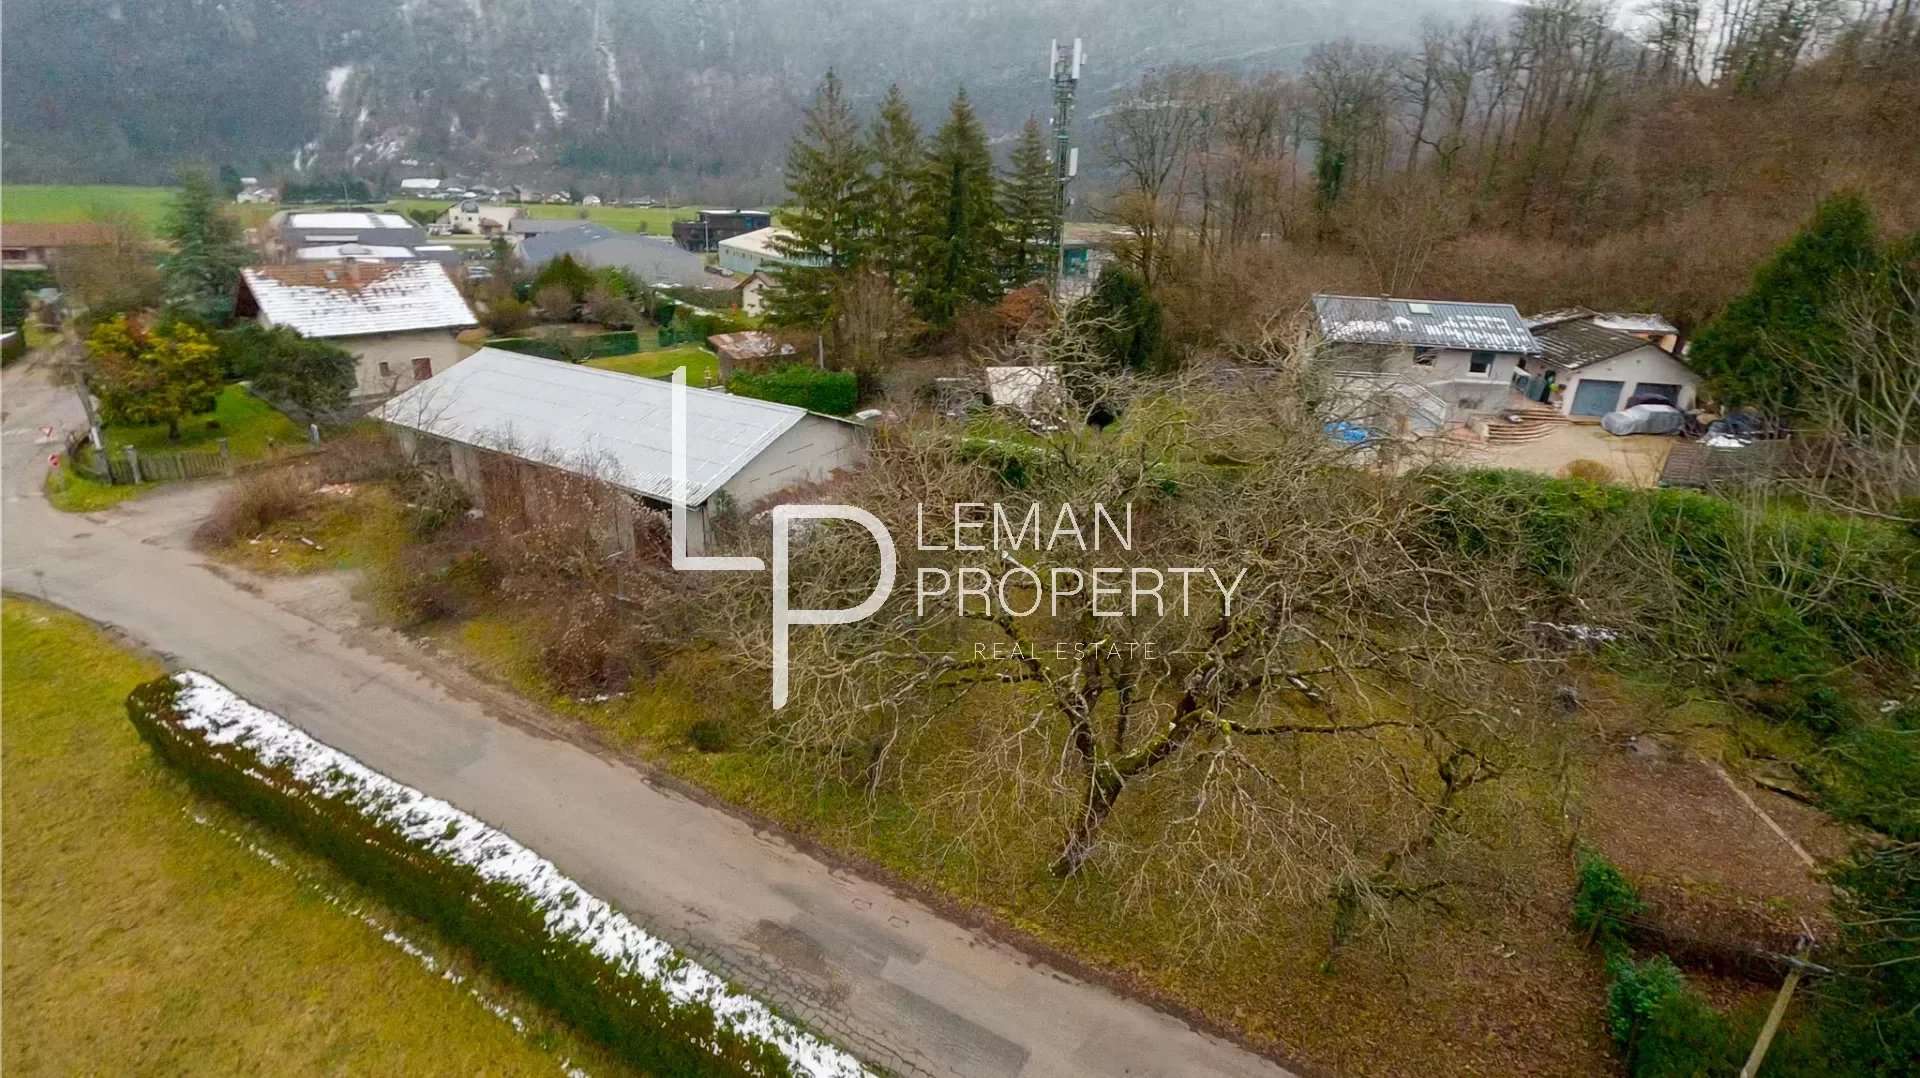 L'agence Leman property vous propose un terrain à la vente